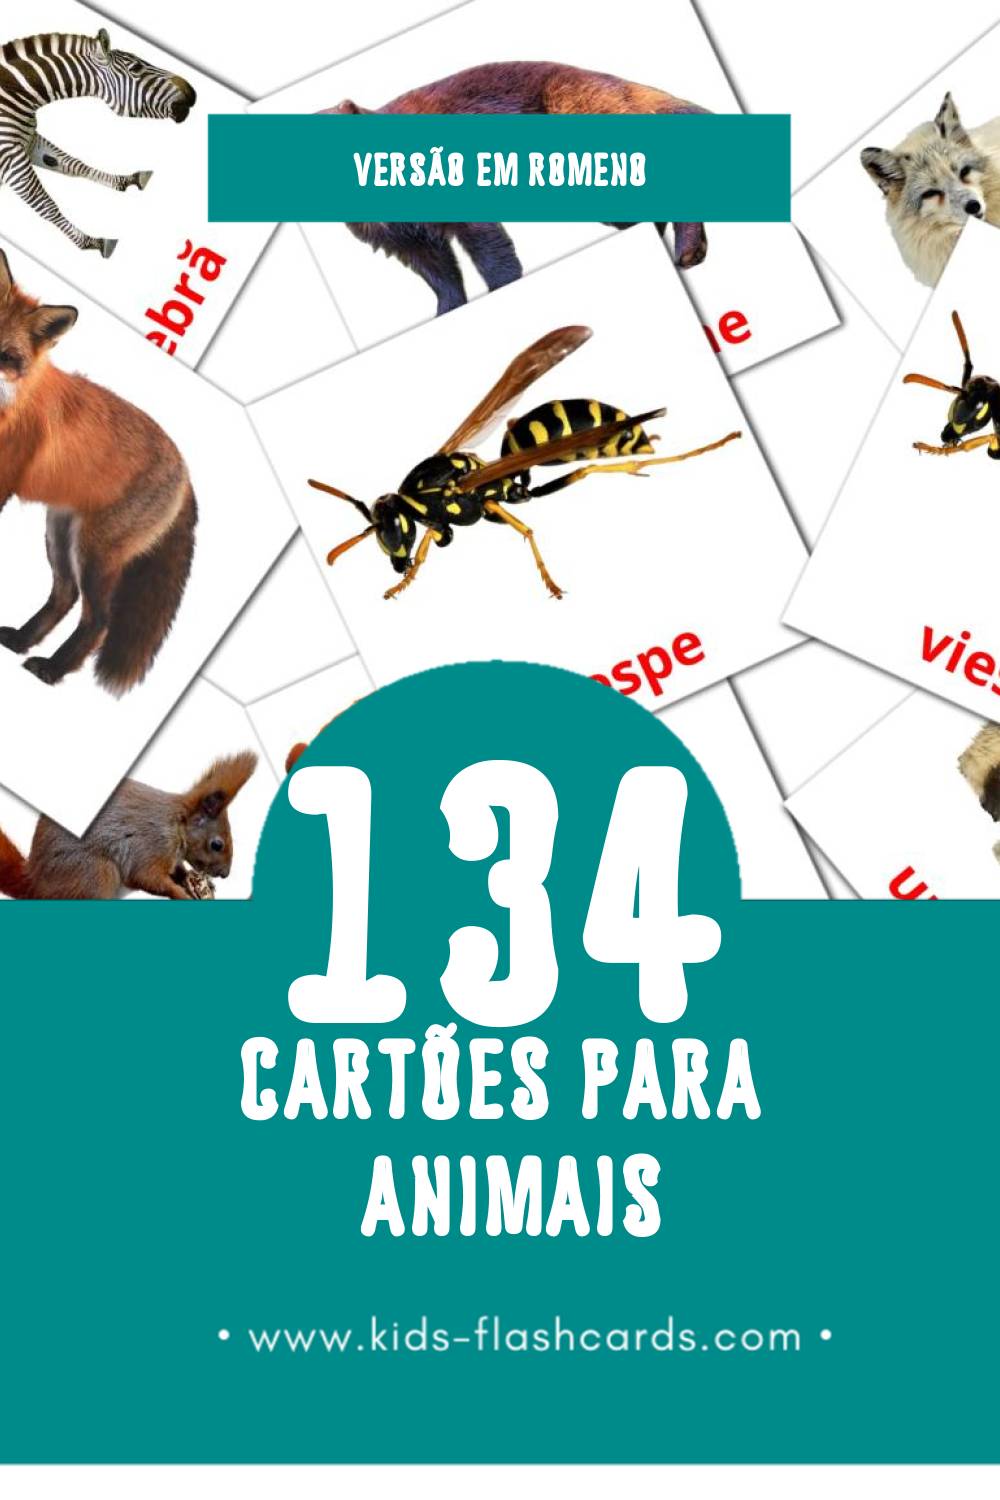 Flashcards de Animale Visuais para Toddlers (134 cartões em Romeno)